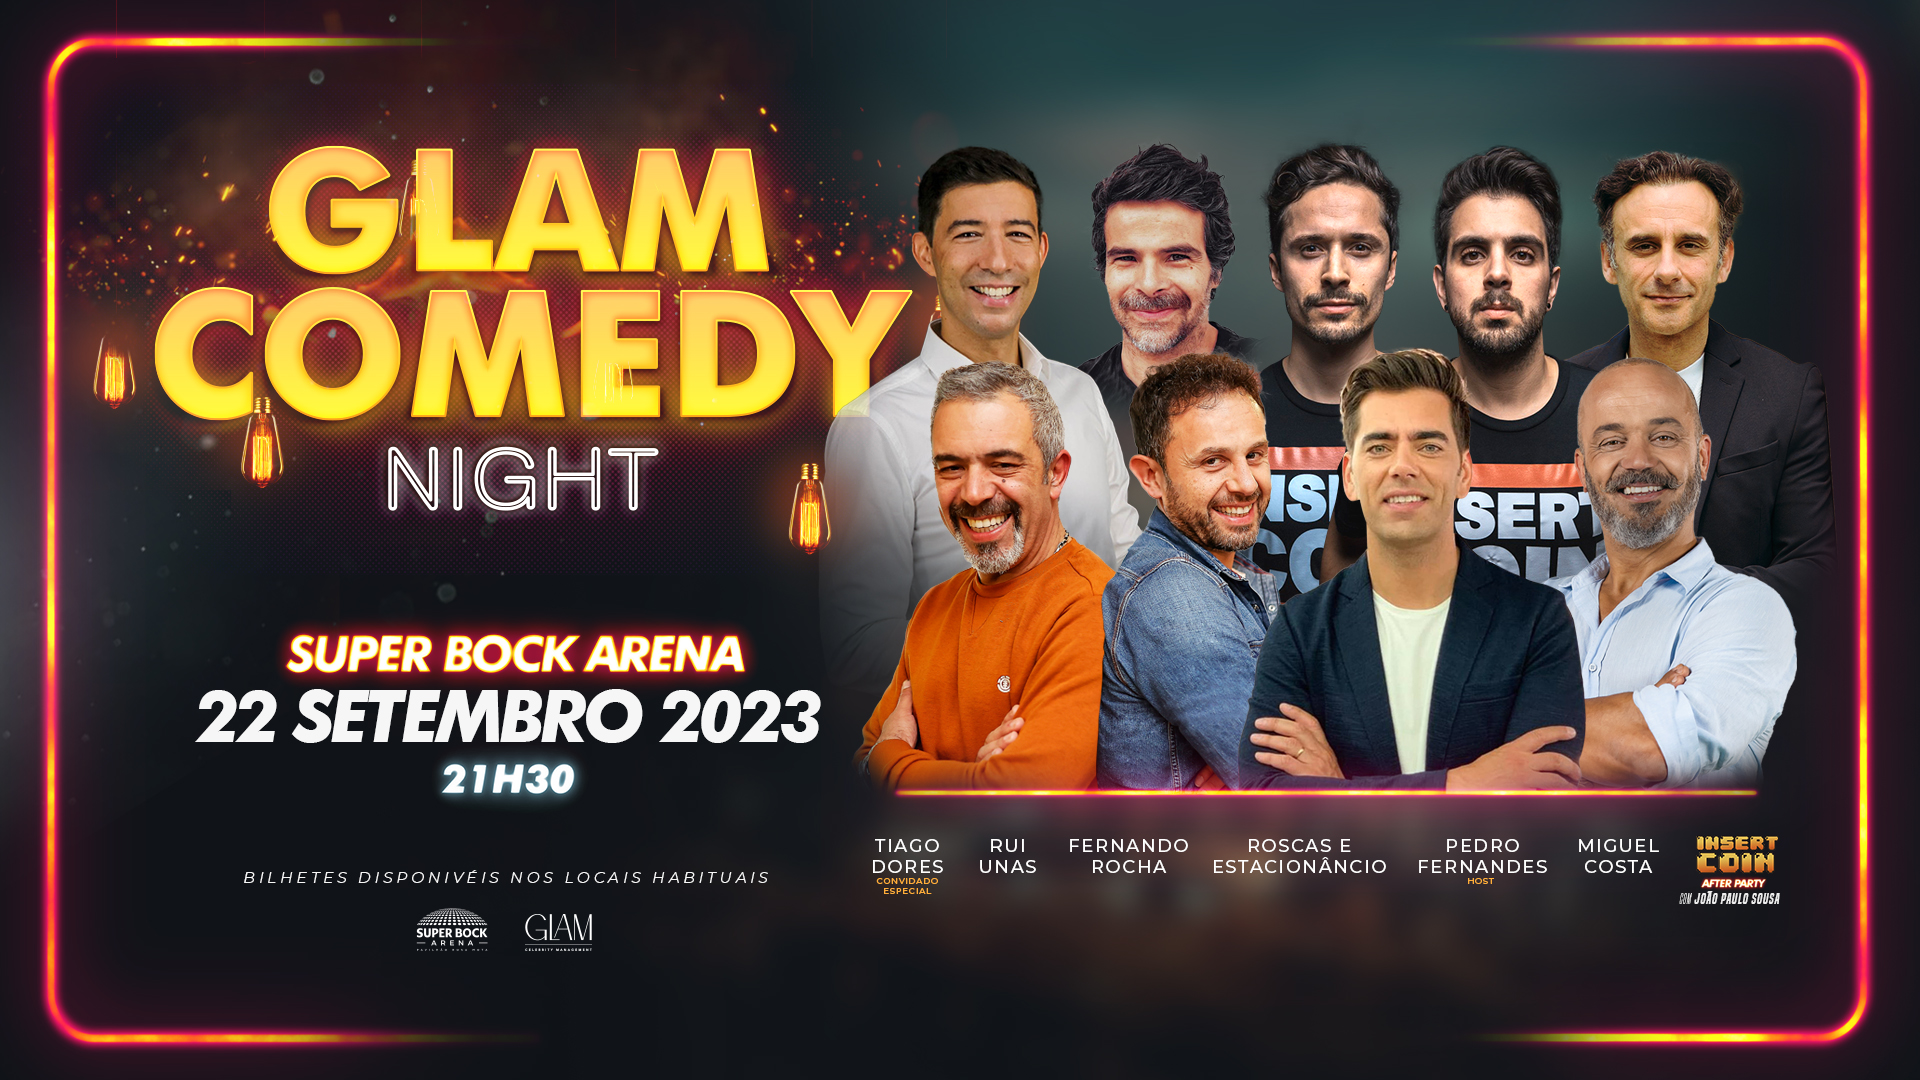 Glam Comedy Night vai reunir &#8220;nomes icónicos da comédia em Portugal&#8221;